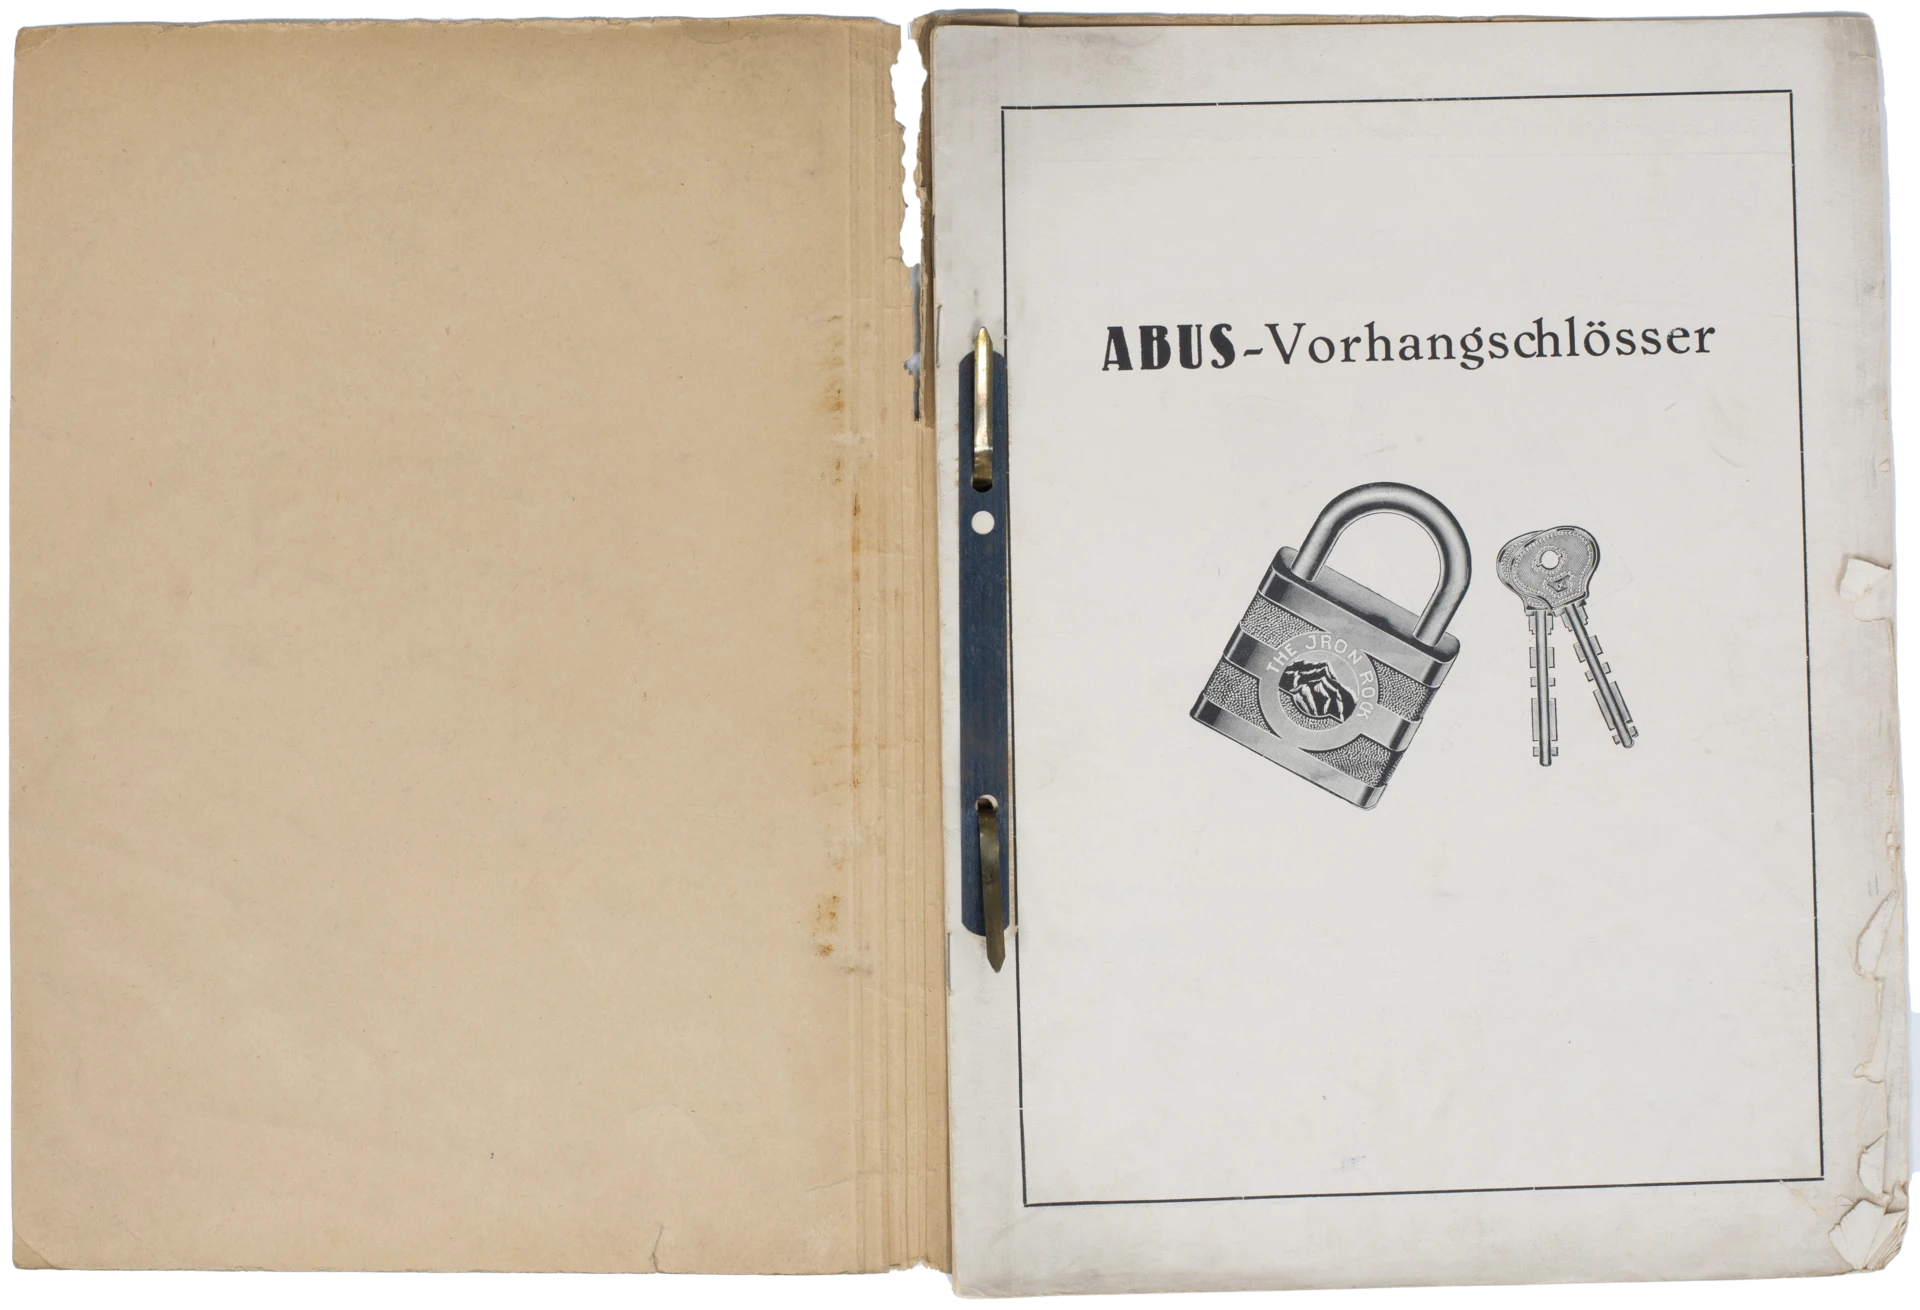 En åben mappe med en forside, der viser en hængelås og et par nøgler, med overskriften "ABUS hængelåse" © ABUS